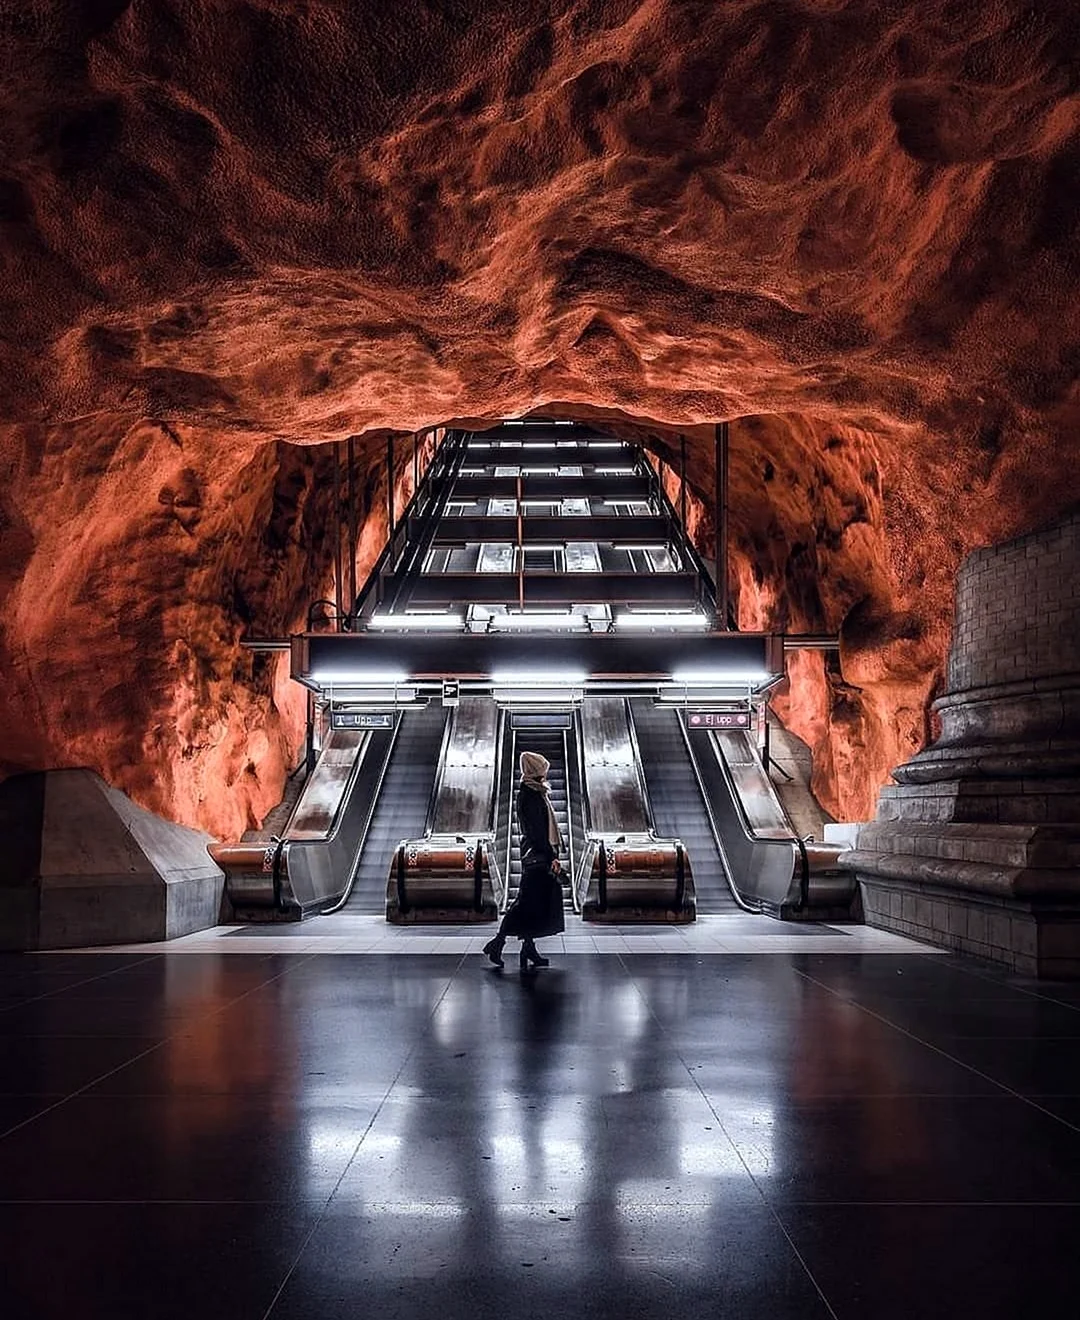 Станция метро Родхусет Стокгольм. Красивая картинка